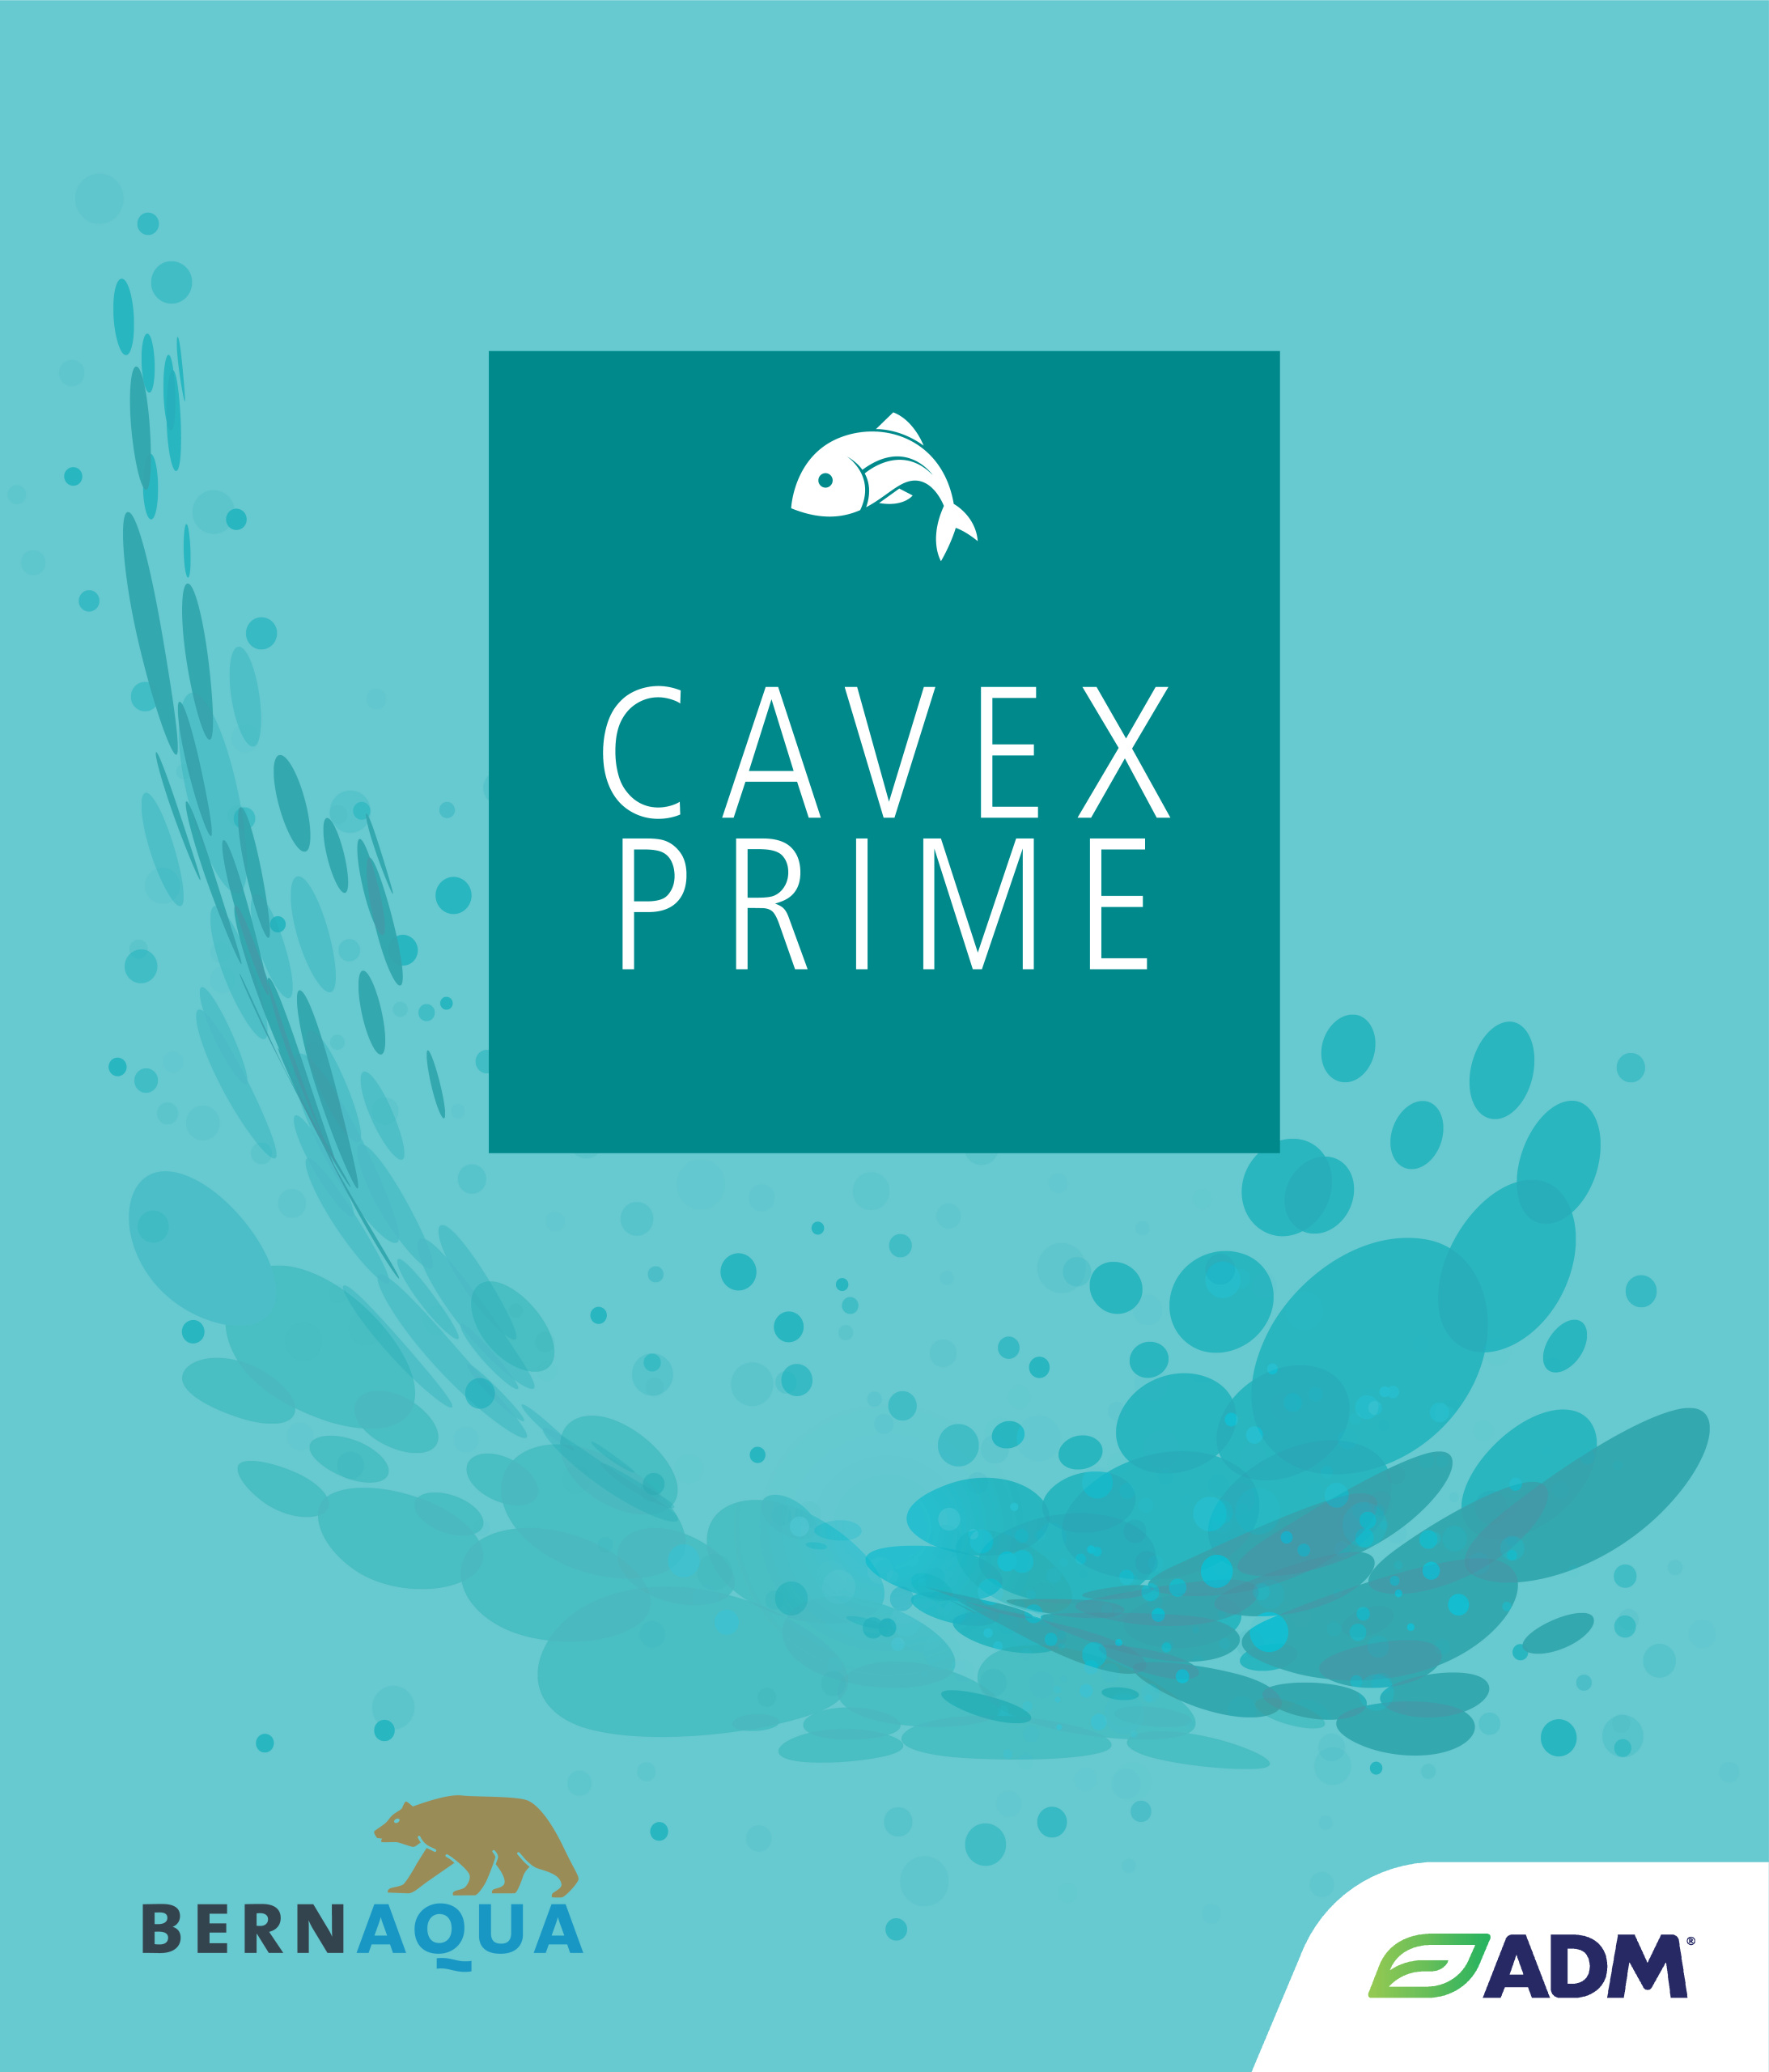 Cavex Prime